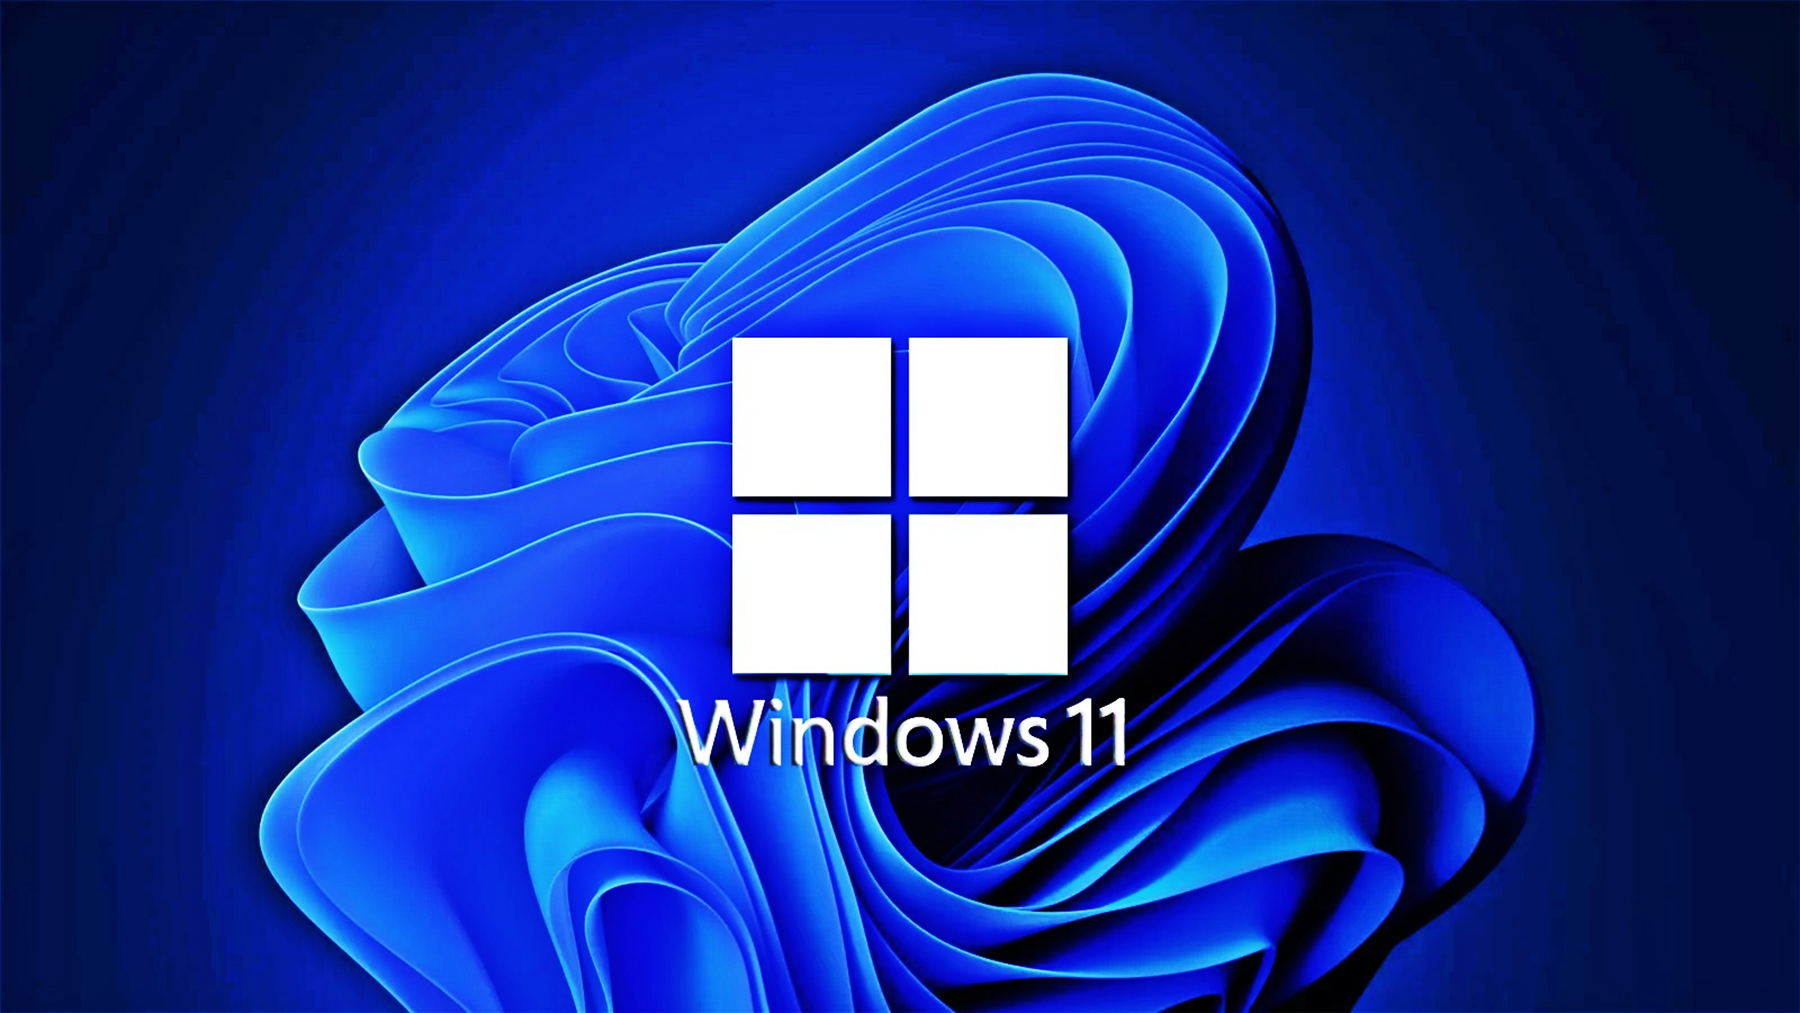 Windows 11: Skal jeg installere det? Hvad er forskellen mellem Windows 10 og 11? Ved alt